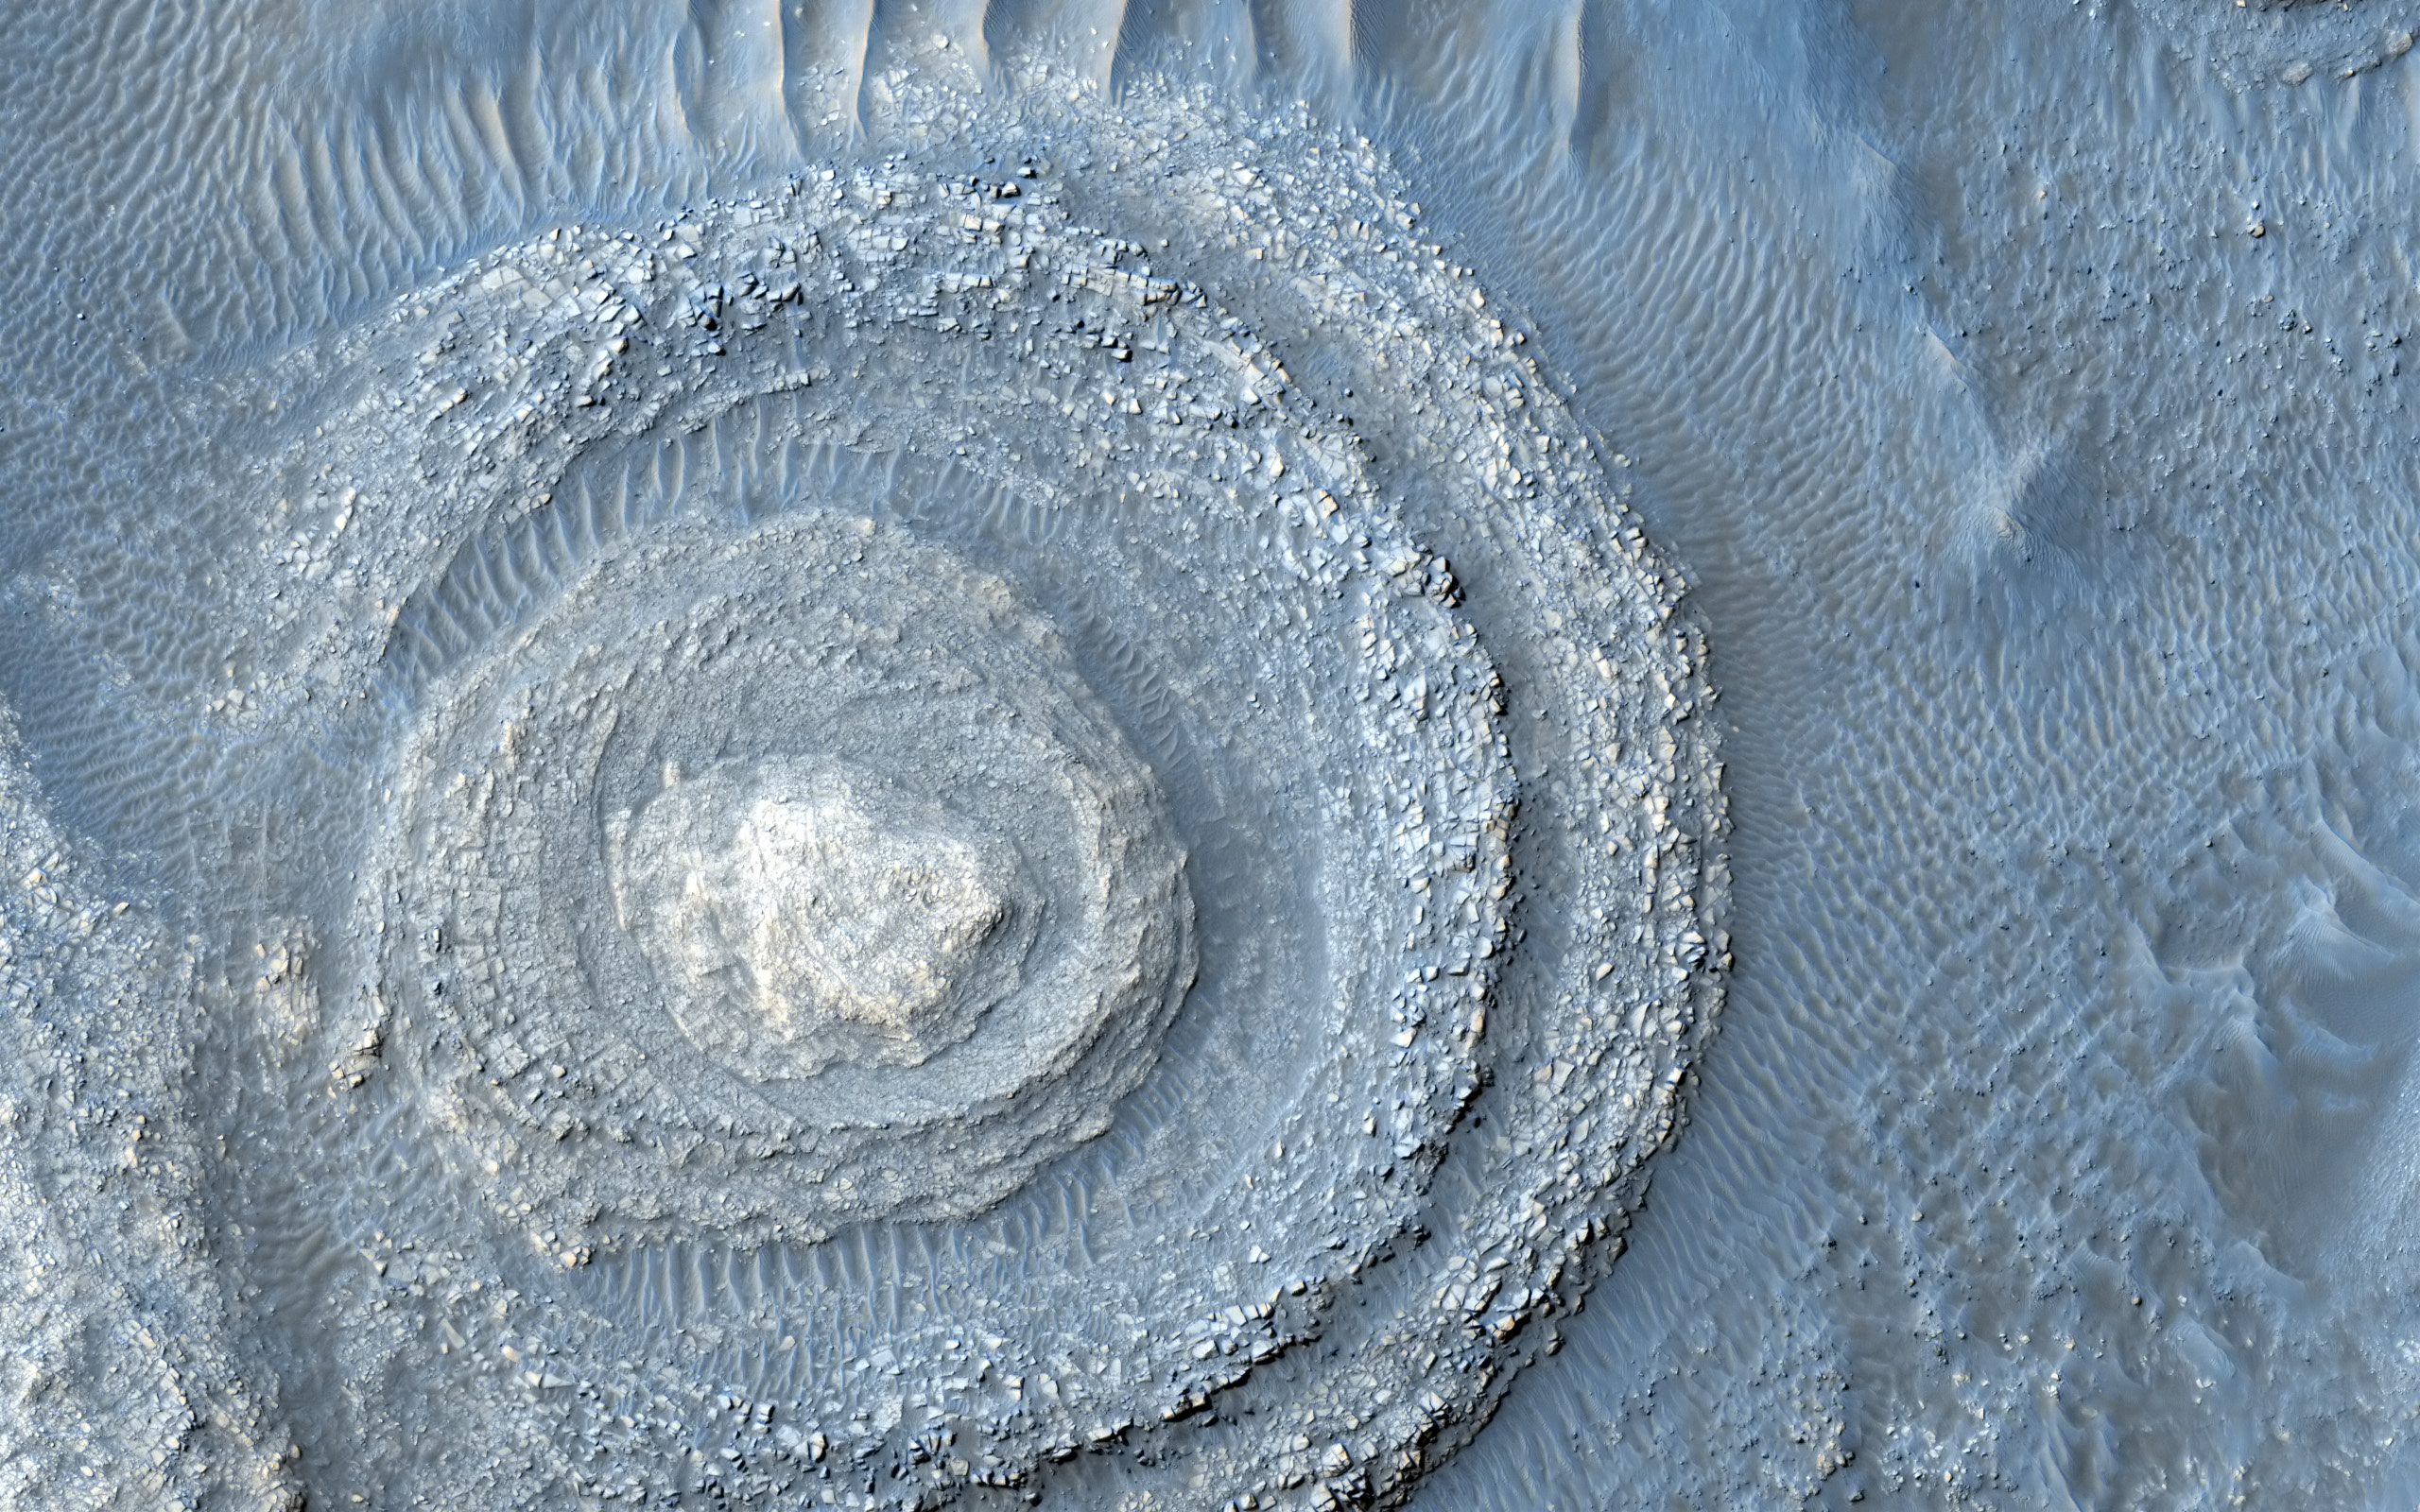 Sci Fi desktop wallpaper depicting the Argyre region on Mars